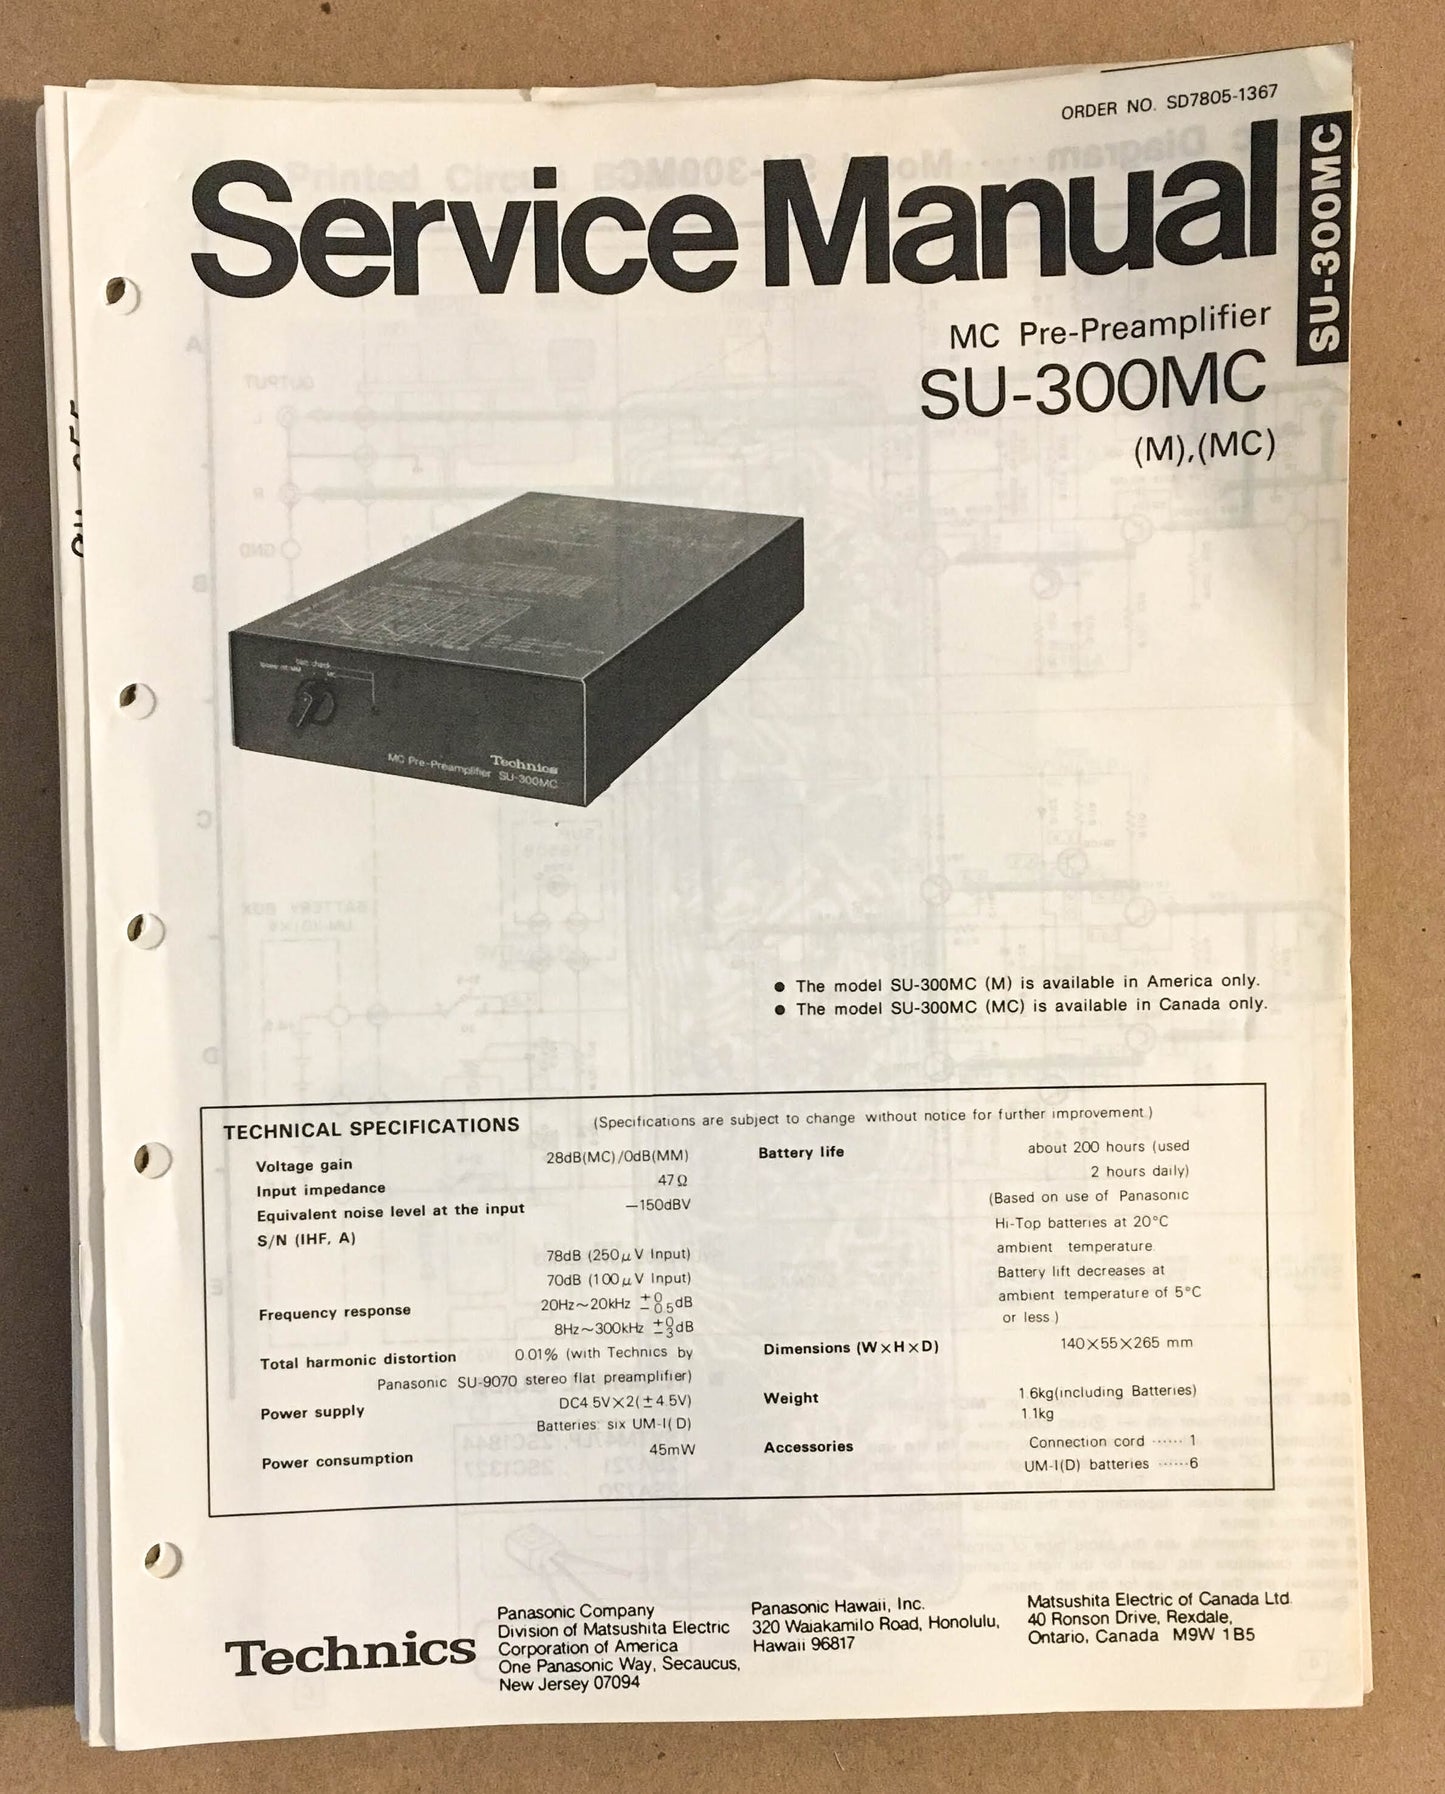 Technics / Panasonic SU-300MC MC Preamplifier  Service Manual *Original*